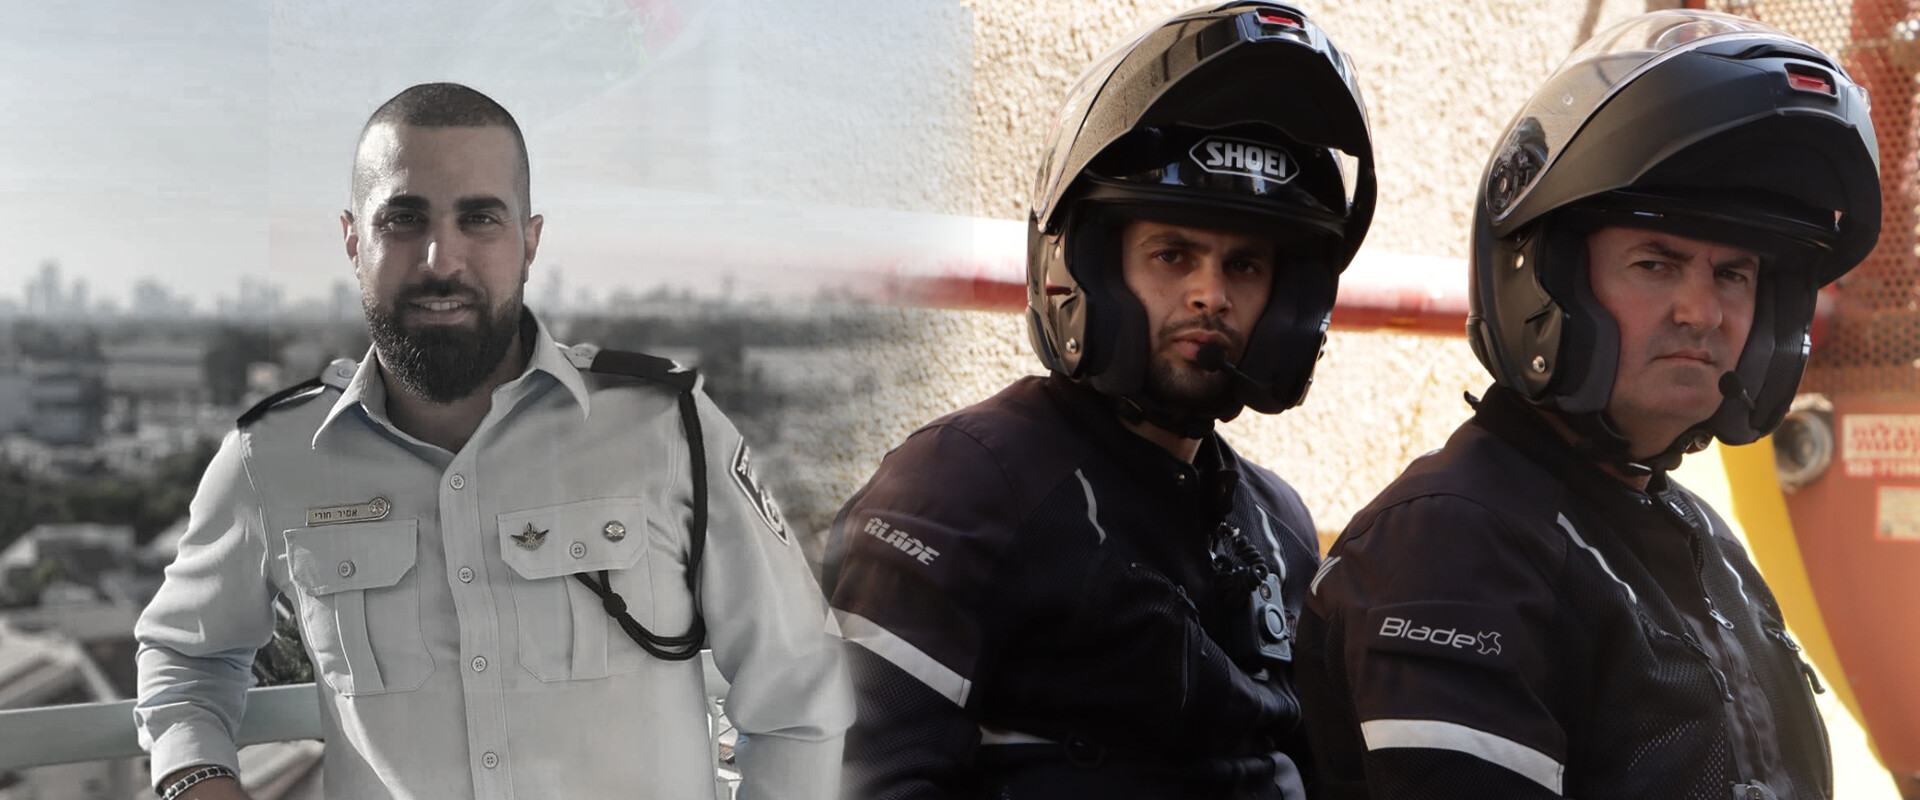 יחידת האופנוענים של אמיר חורי (צילום: דוברות המשטרה)